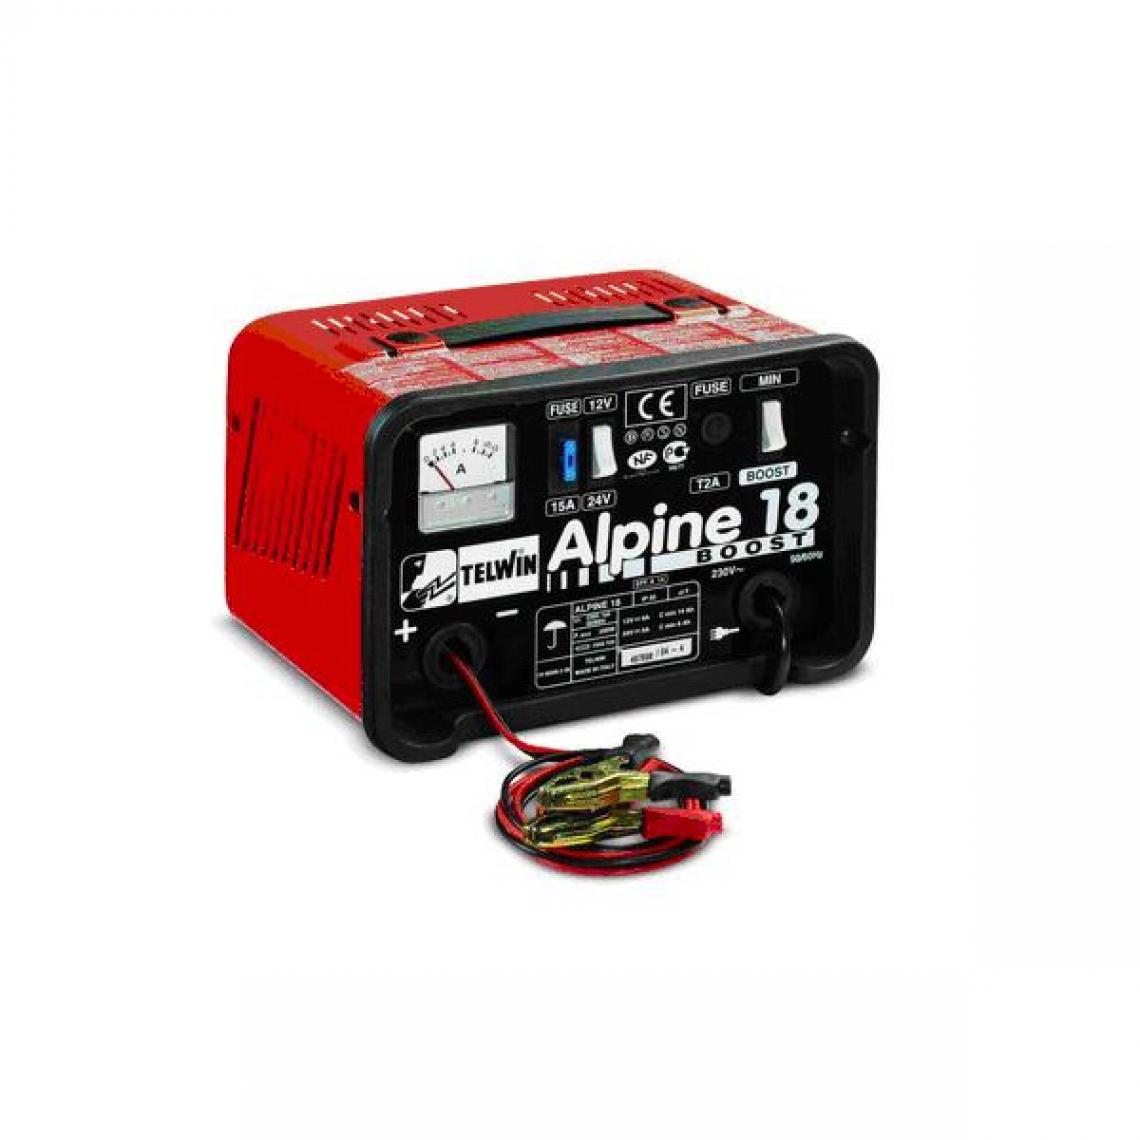 Telwin - Telwin - Chargeur de batterie 12-24V 14-8A 200W - Alpine 18 Boost - Consommables pour outillage motorisé